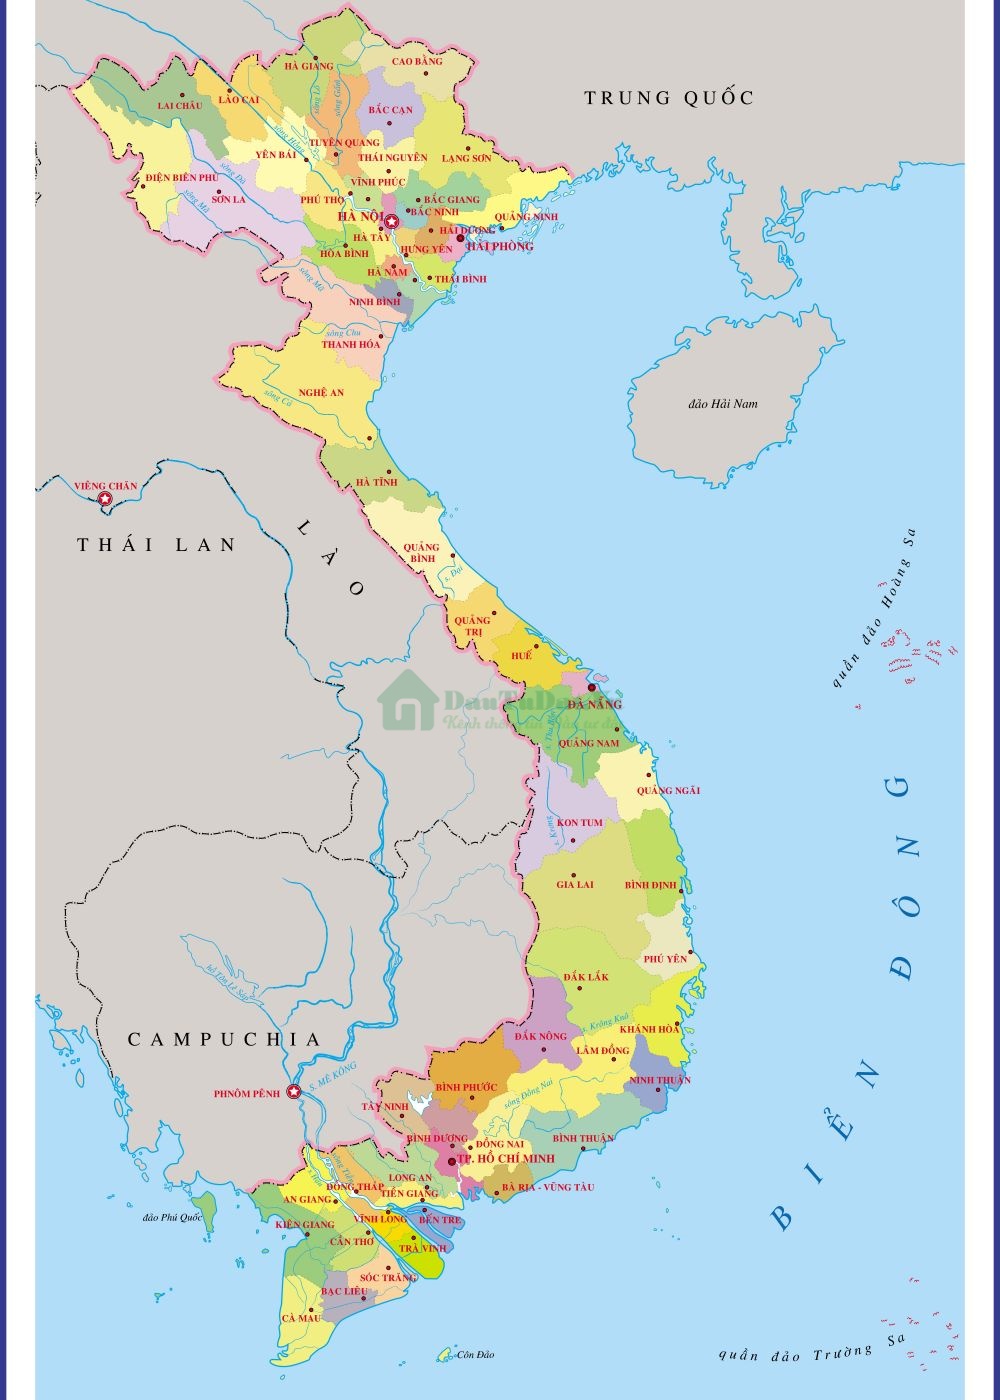 Bản đồ Việt Nam mới 2022: Bần ví về khám phá những thay đổi mới nhất trên bản đồ Việt Nam. Nội dung động và cập nhật đầy đủ thông tin mới nhất. Tìm kiếm thông tin trên bản đồ này sẽ giúp bạn đến nguồn thông tin tốt nhất.